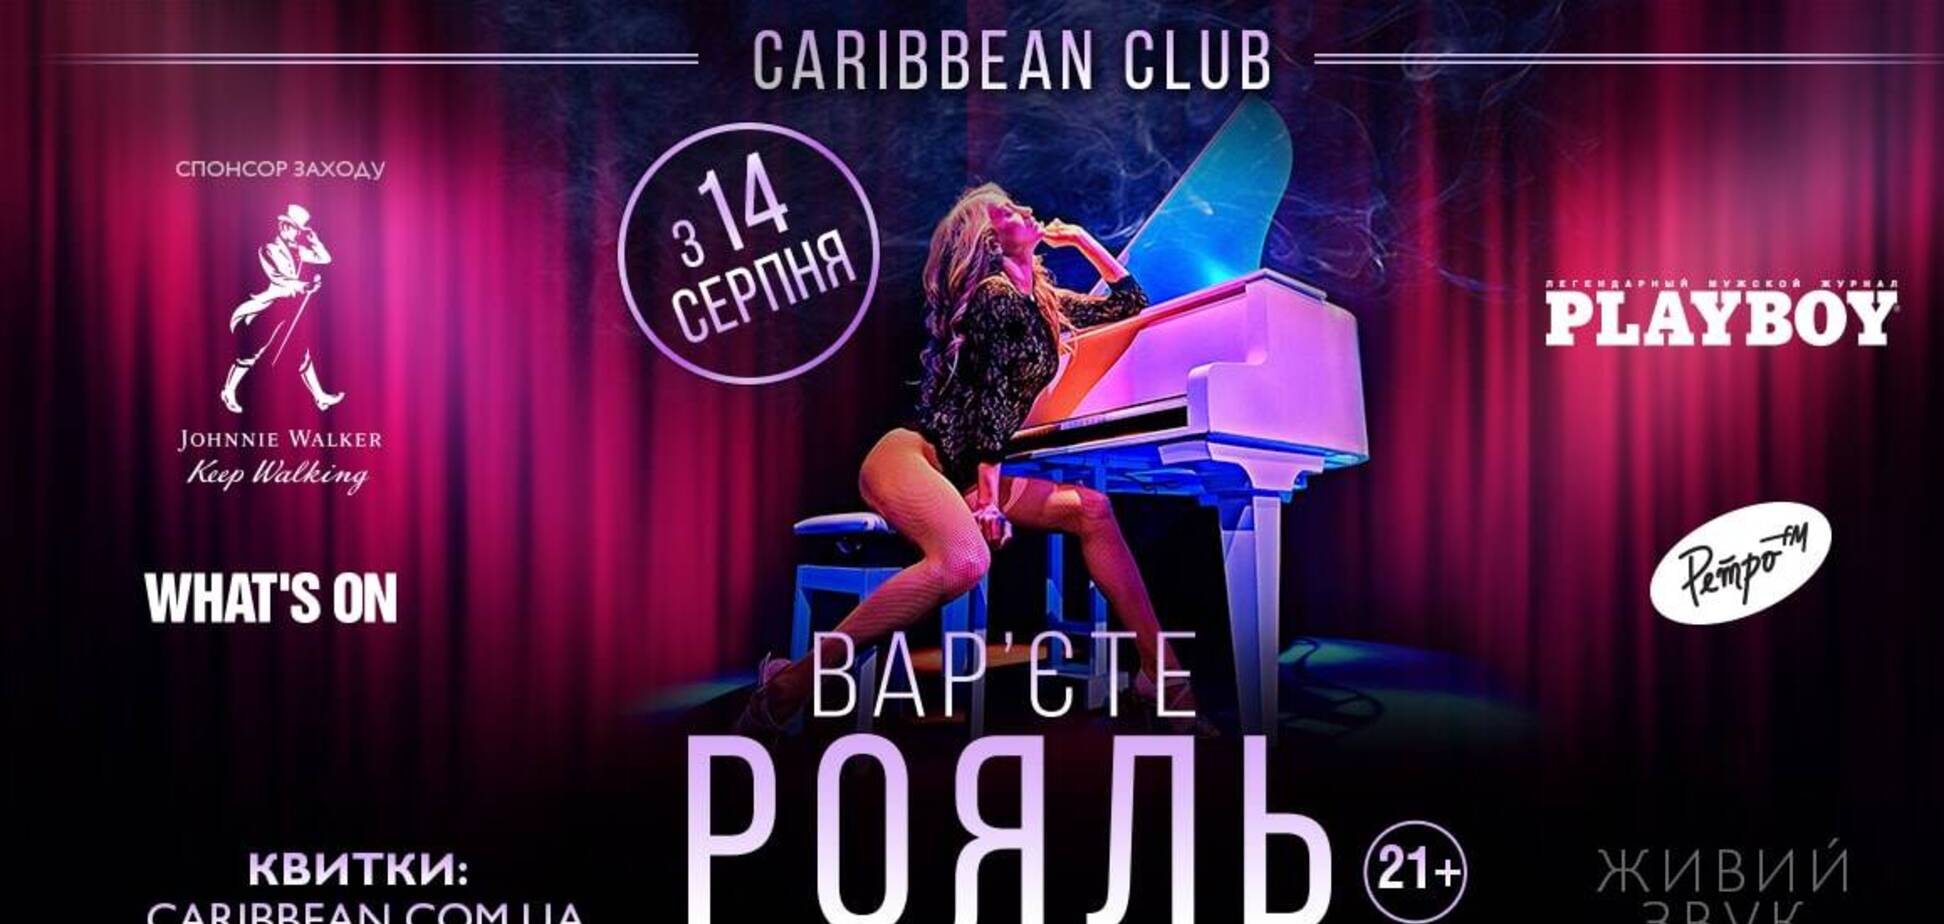 Еротичне шоу для дорослих: вар’єте 'Рояль' повертається на сцену столичного Caribbean Club